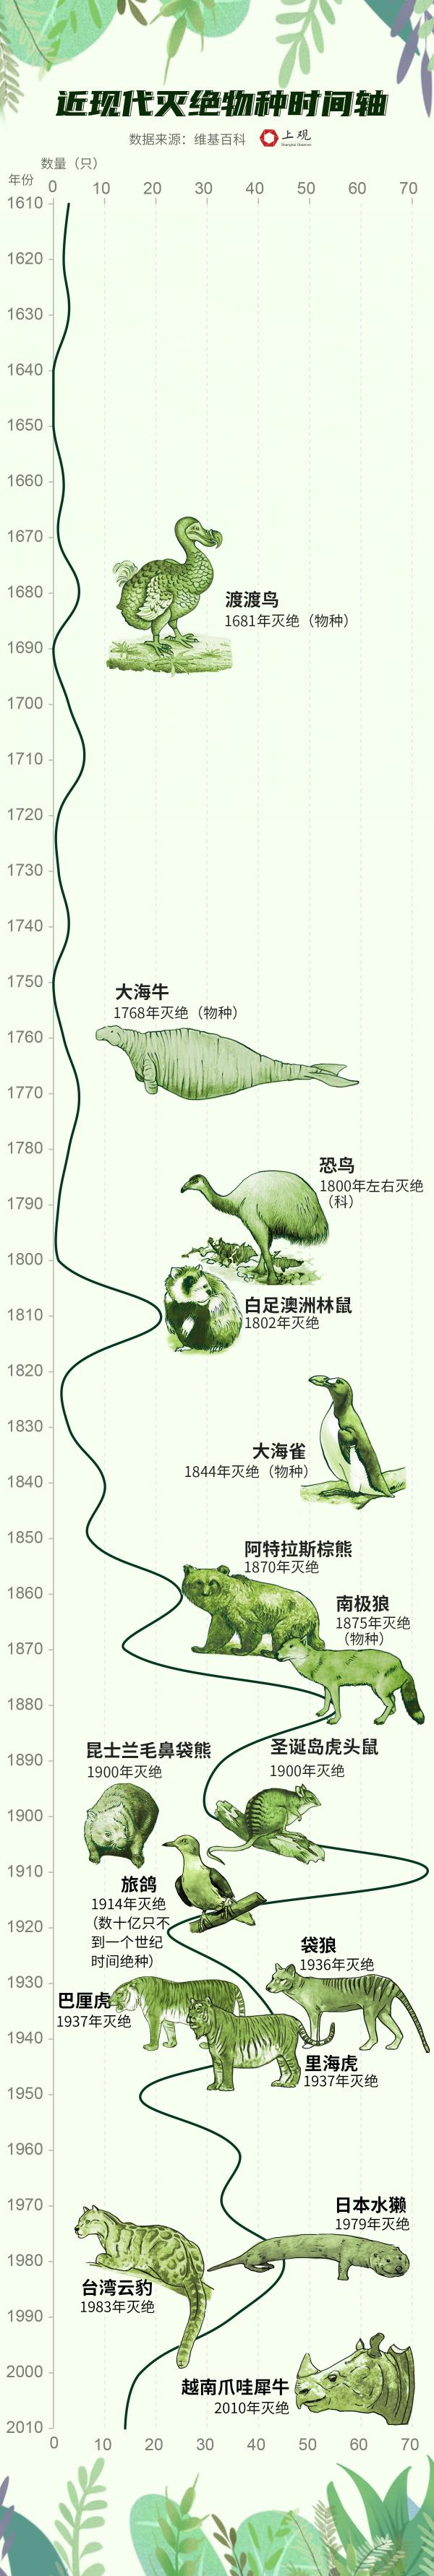 灭绝动物时间轴图片